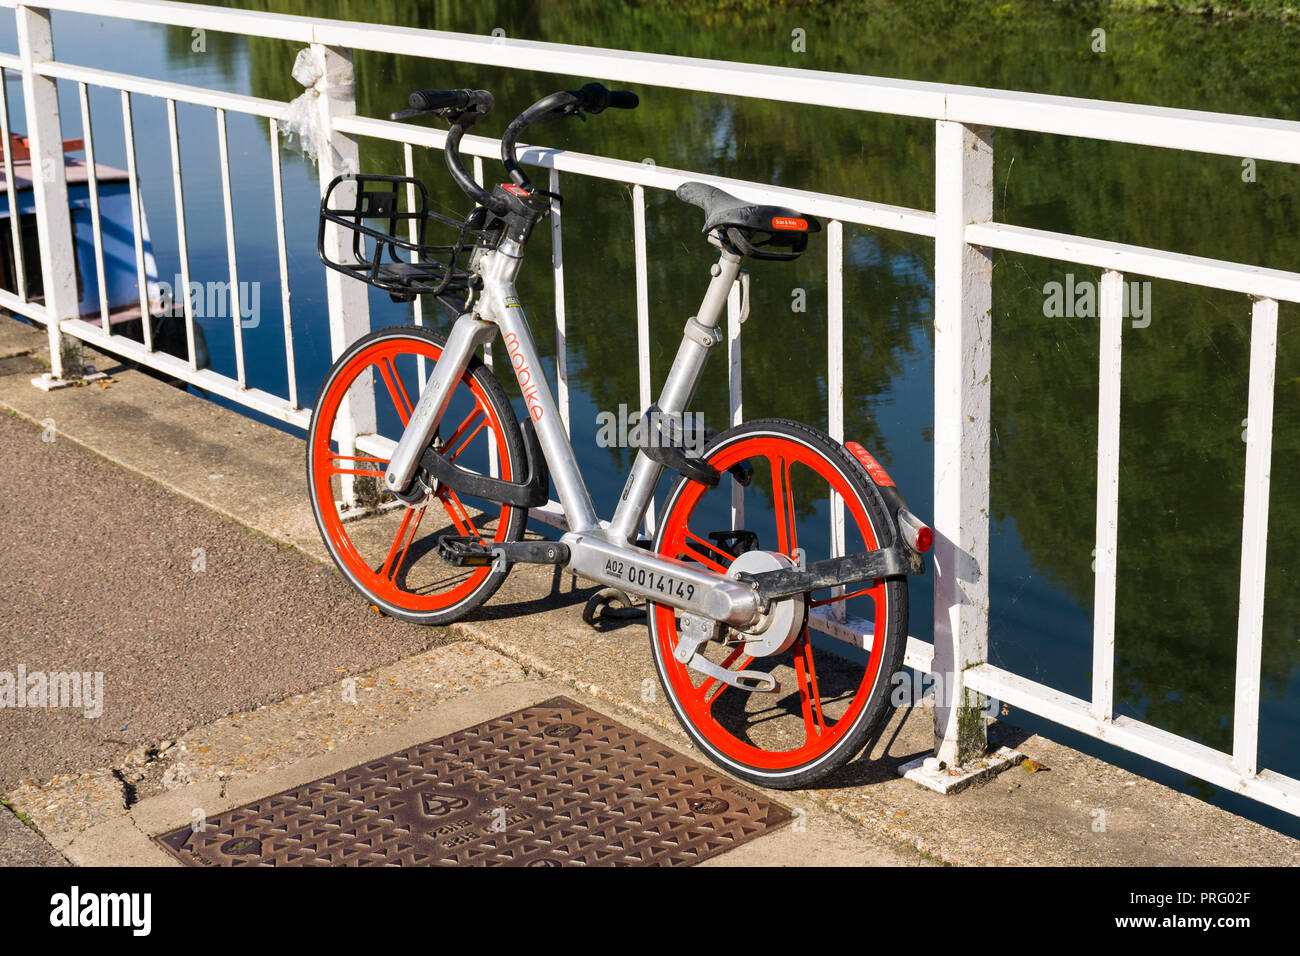 Un Mobike bike schema di condivisione bike appoggiata contro le ringhiere in bianco con il fiume Cam in background, Cambridge, Regno Unito Foto Stock